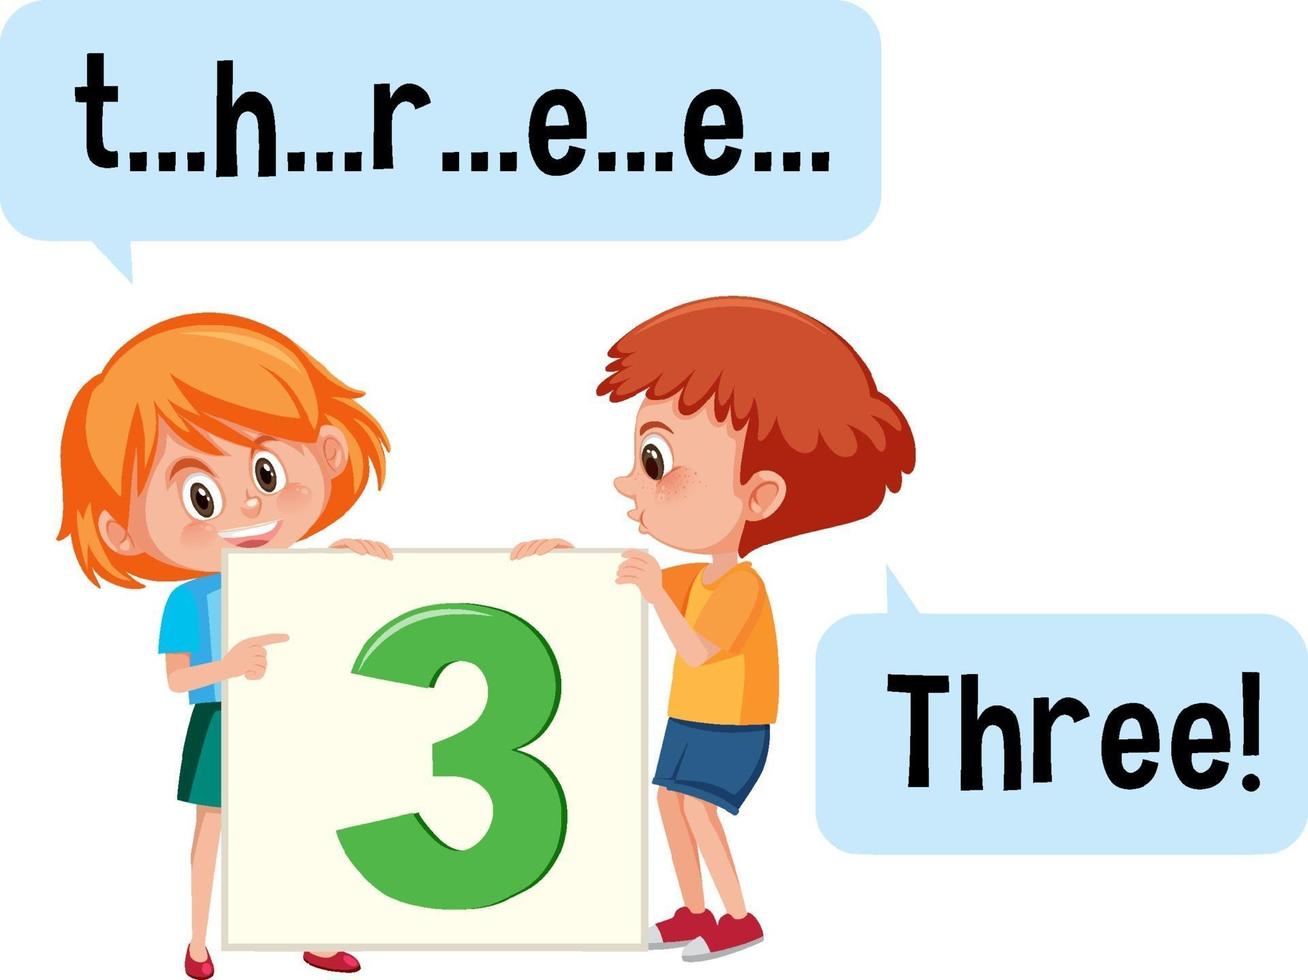 stripfiguur van twee kinderen die de nummer drie spellen vector